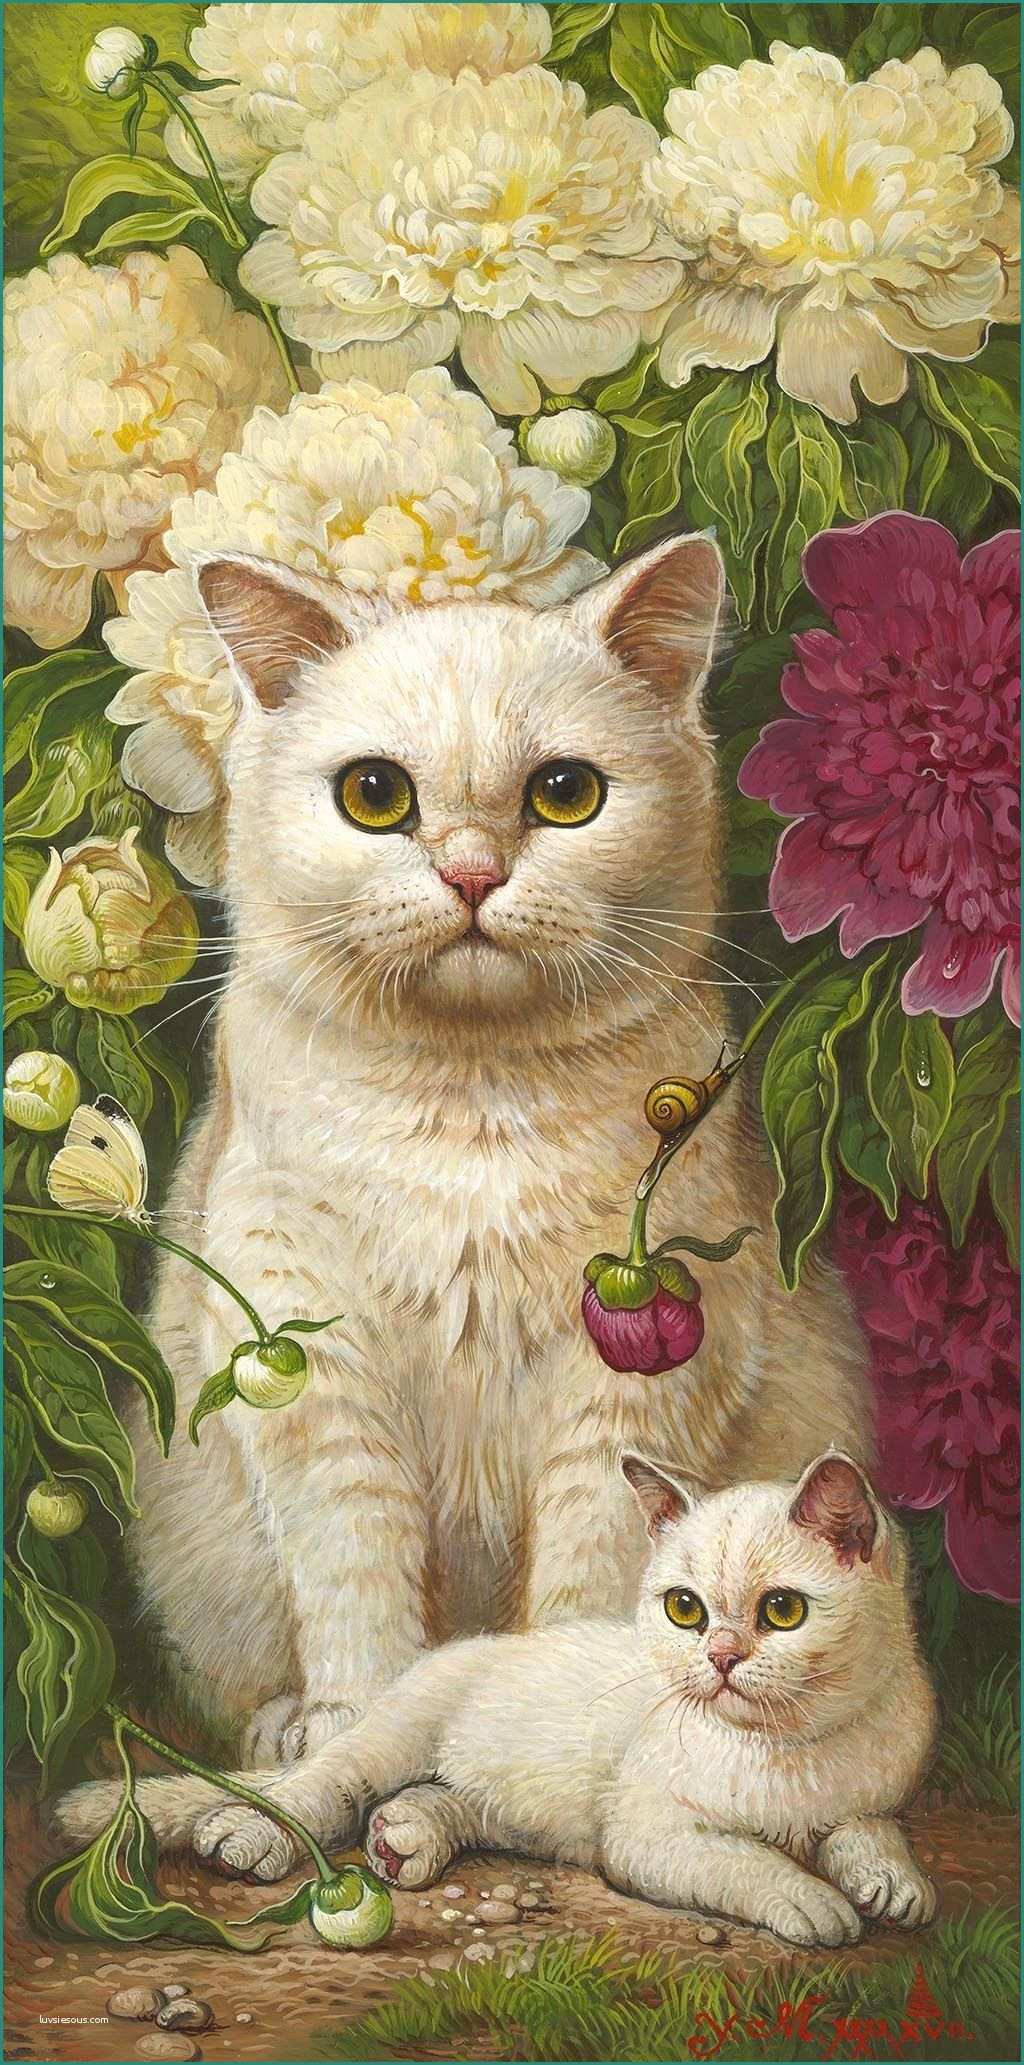 Disegnare Un Gatto E Wallpaper by Artist Unknown Cats Art Pinterest